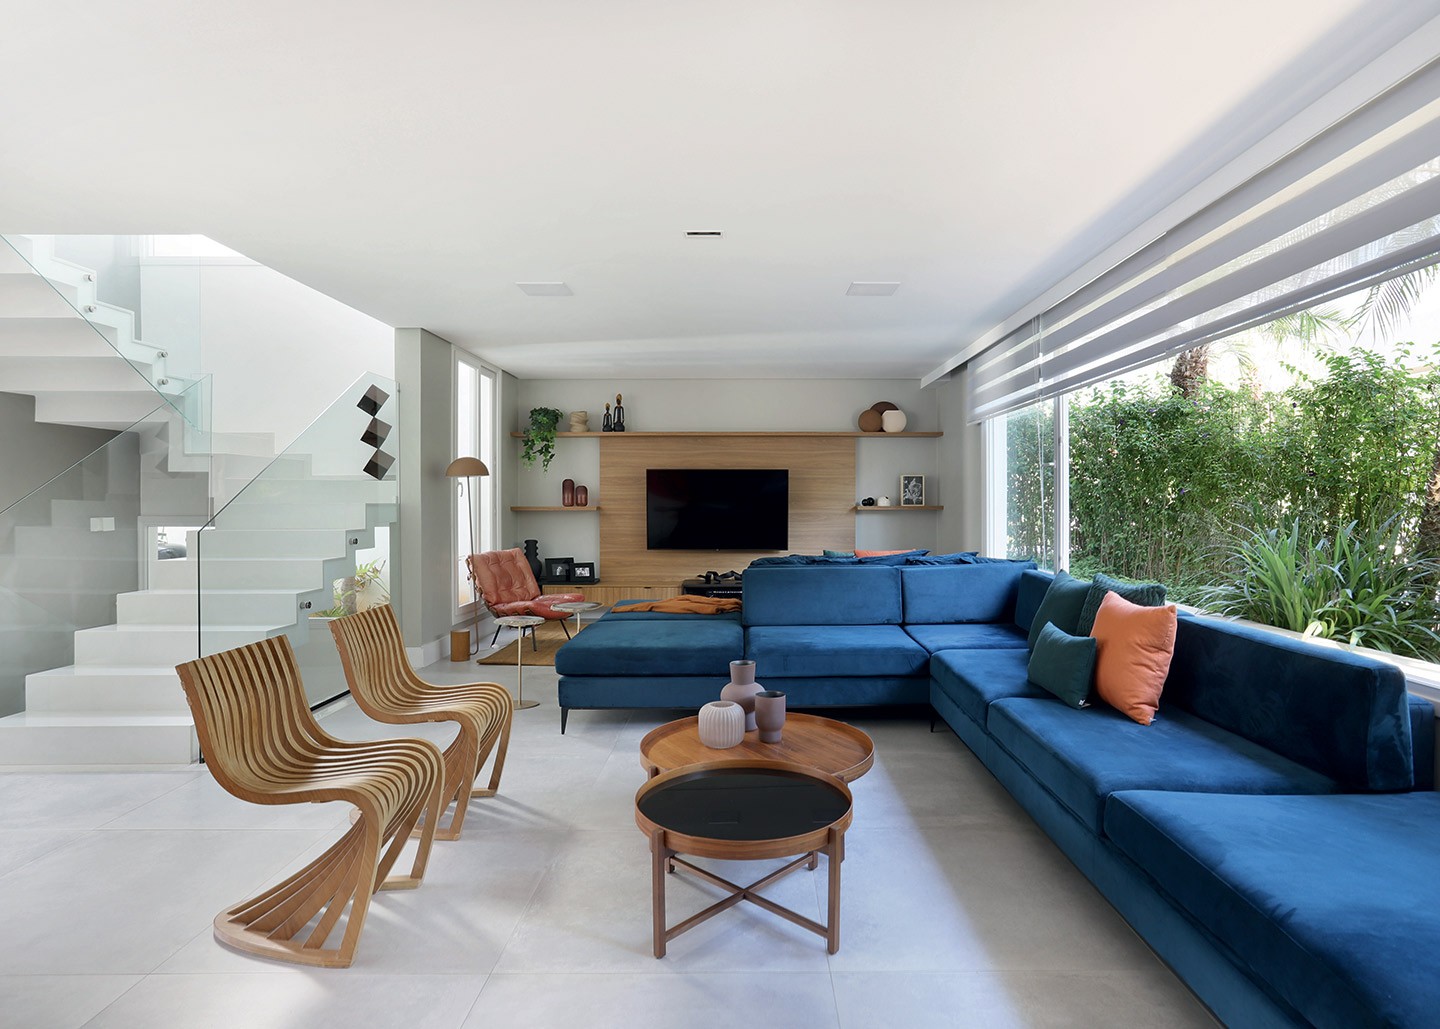 Casa de 350 m² ganha decoração alegre com pinturas geométricas e design assinado (Foto: Mariana Orsi/divulgação)